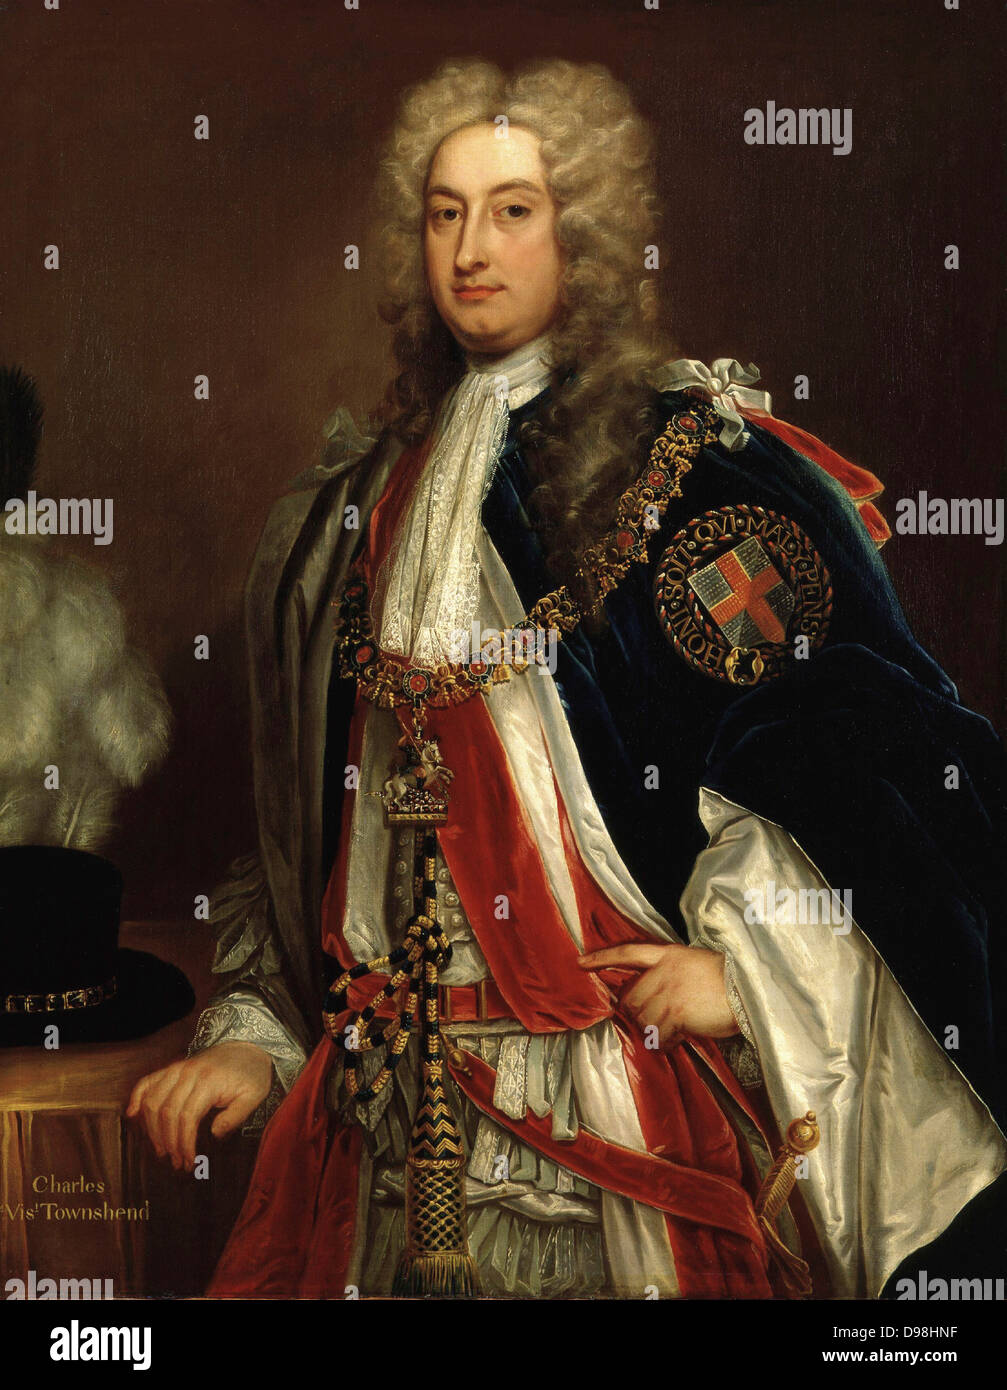 Charles Townshend, 2. Viscount Townshend Bt, KG, PC (18. April 1674. - 21. Juni 1738) British Whig Staatsmann. Er diente seit einem Jahrzehnt als Staatssekretär, Regie britische Außenpolitik. Er wurde oft als Rübe Townshend wegen seiner starken Interesse an der Landwirtschaft bekannt. Unbekannt nach Sir Godfrey Kneller (1646-1723) Stockfoto